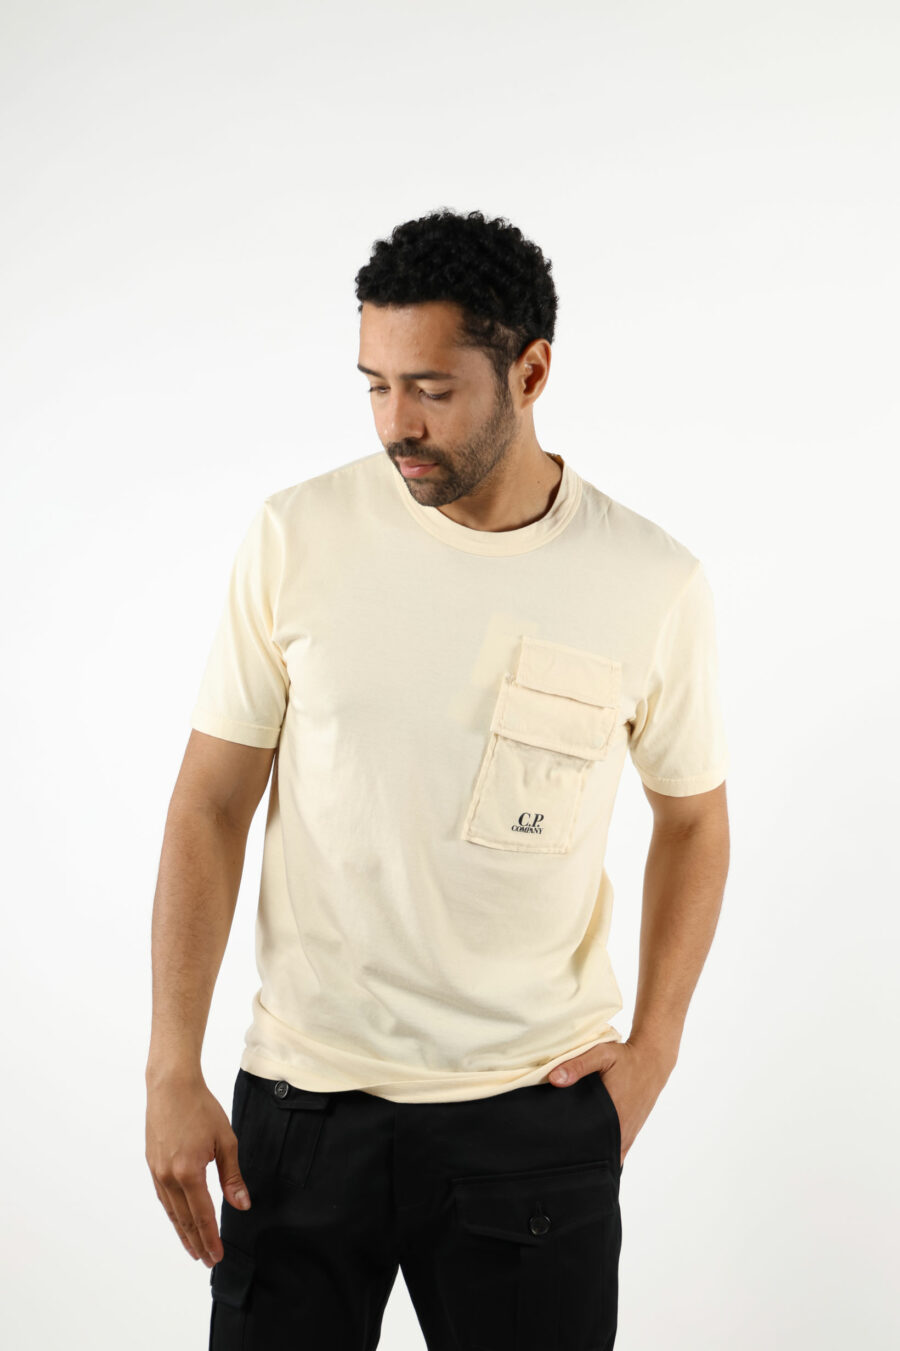 Beigefarbenes T-Shirt mit Taschen und Mini-Logo "cp" - 111341